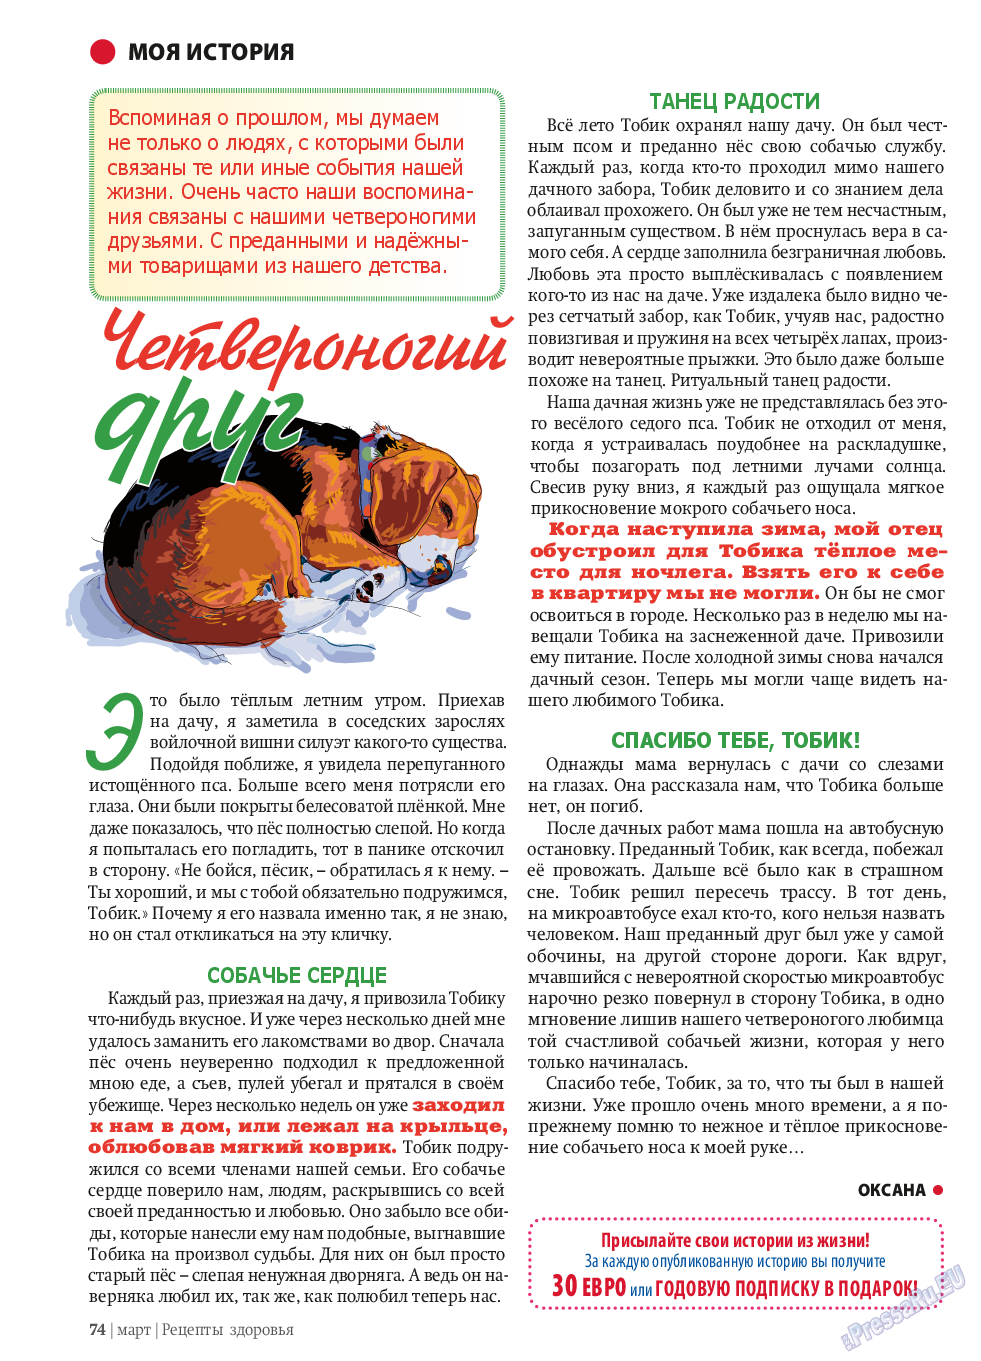 Рецепты здоровья (журнал). 2014 год, номер 58, стр. 74